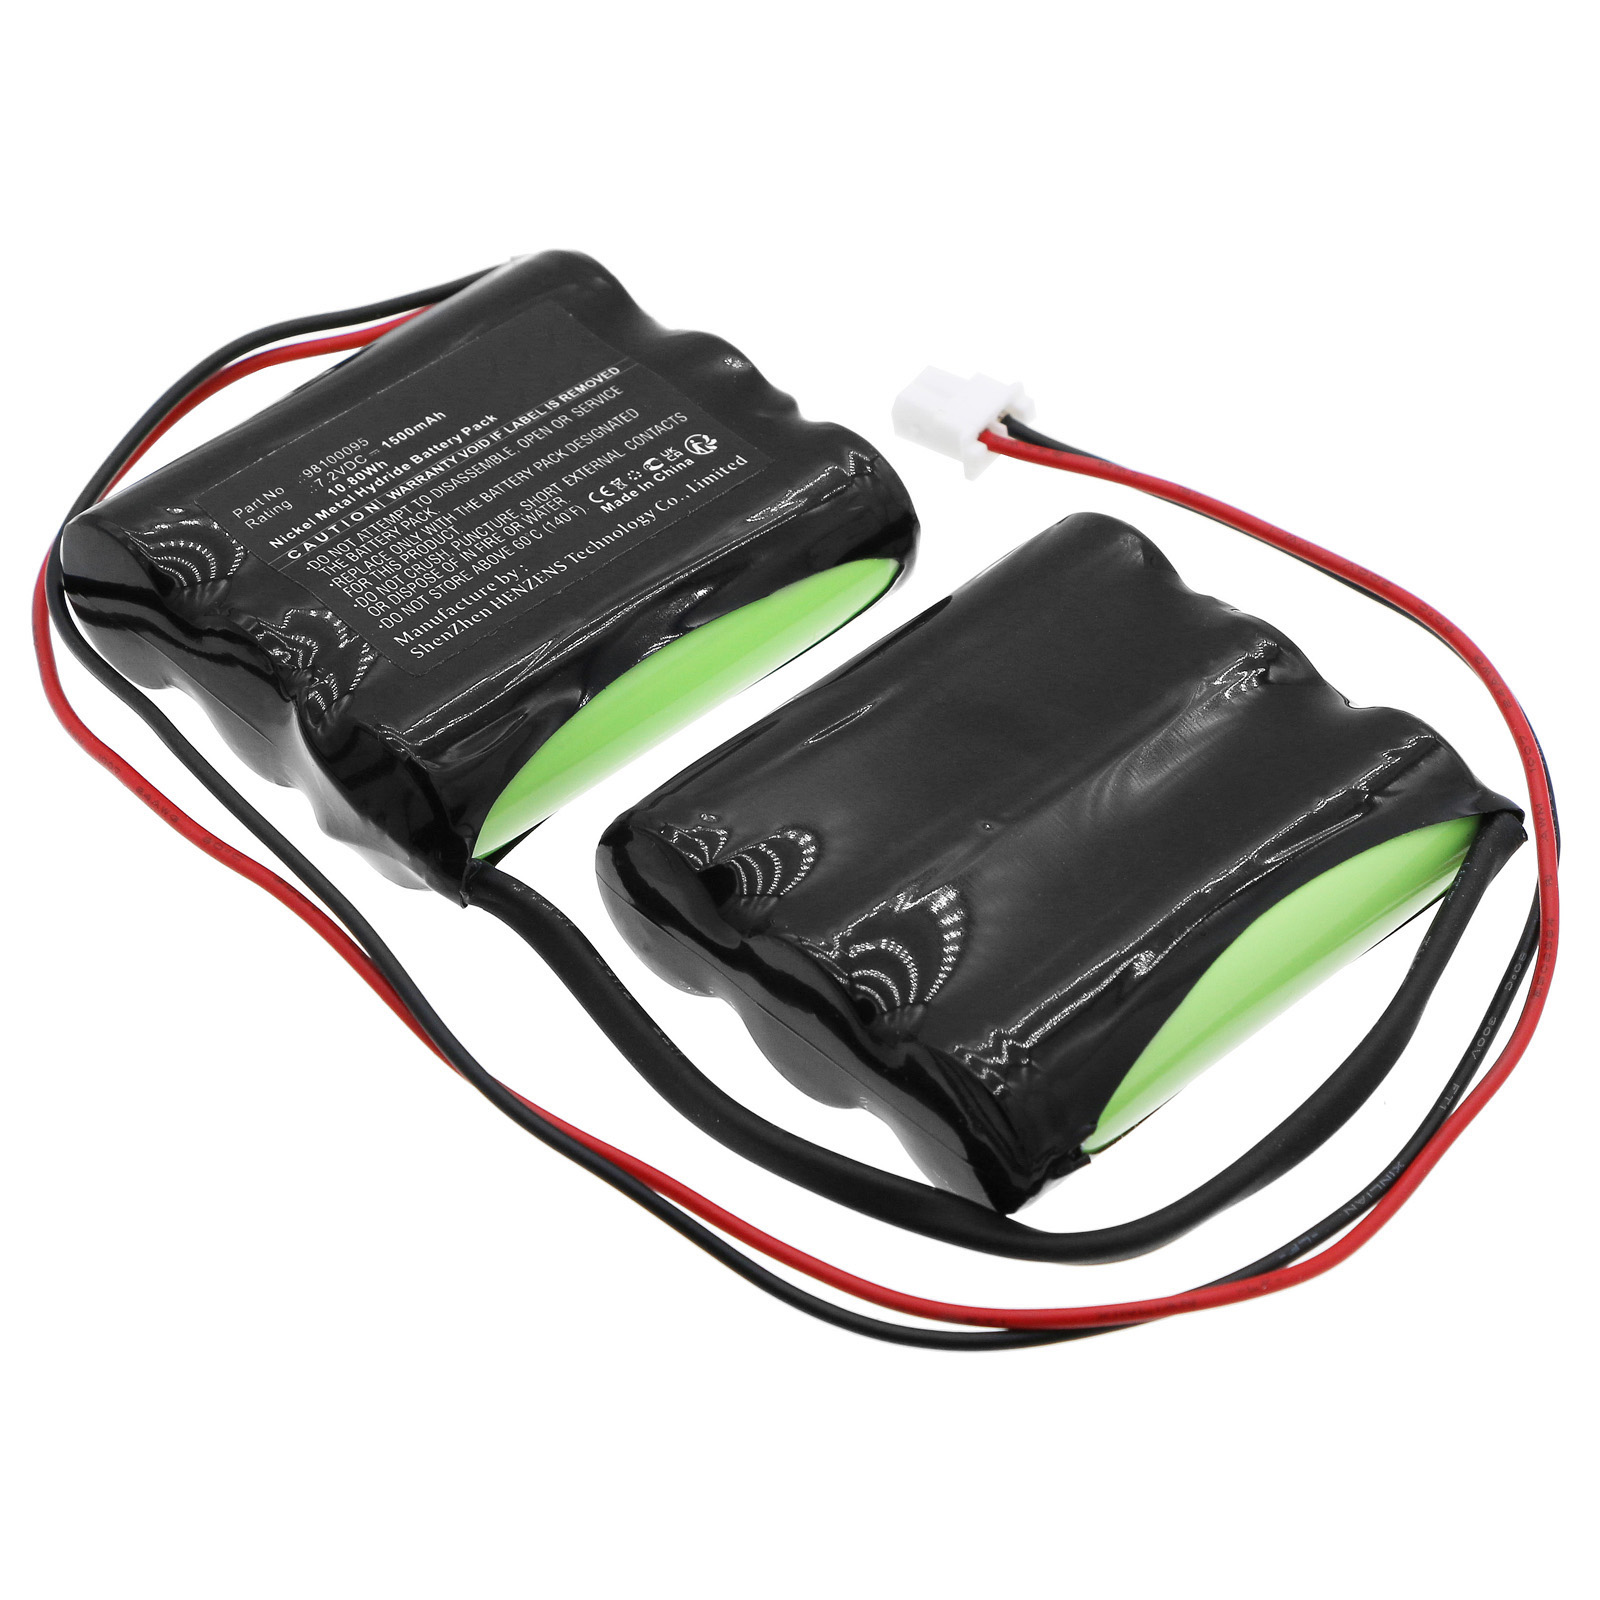 Synergy Digital Emergency Lighting Battery, Compatible with Beghelli 98100095 Emergency Lighting Battery (Ni-MH, 7.2V, 1500mAh)